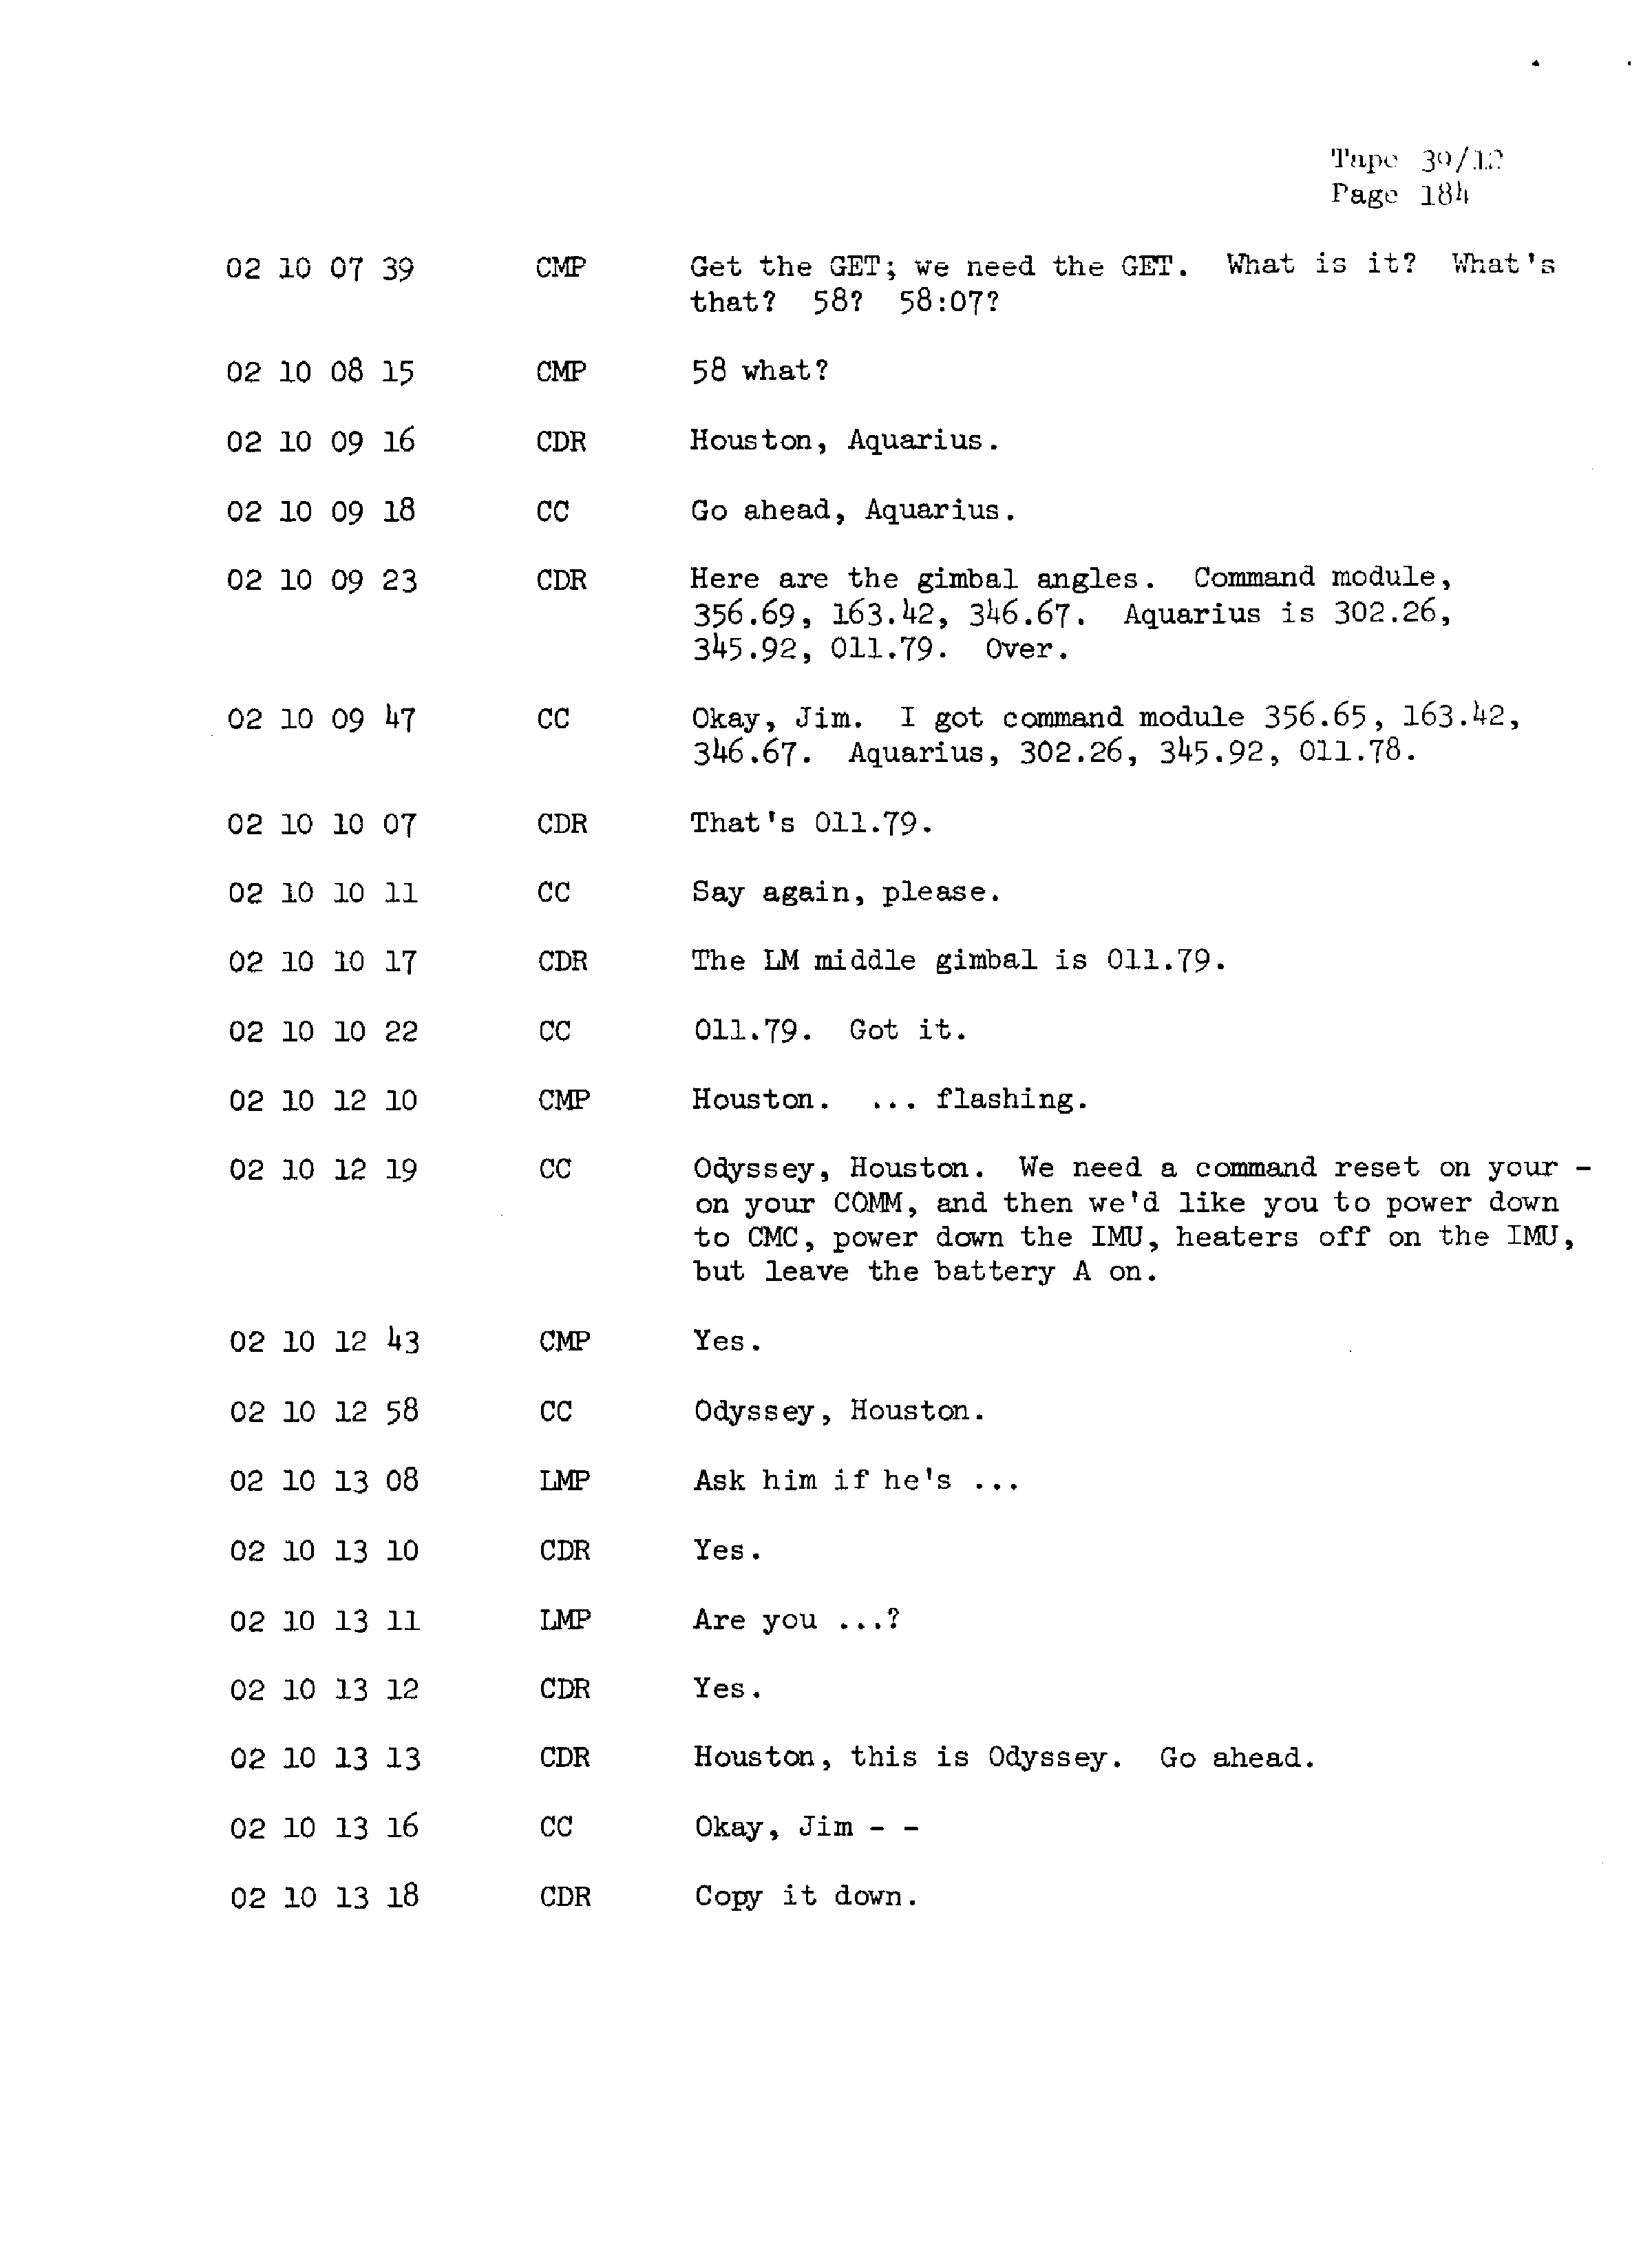 Page 191 of Apollo 13’s original transcript